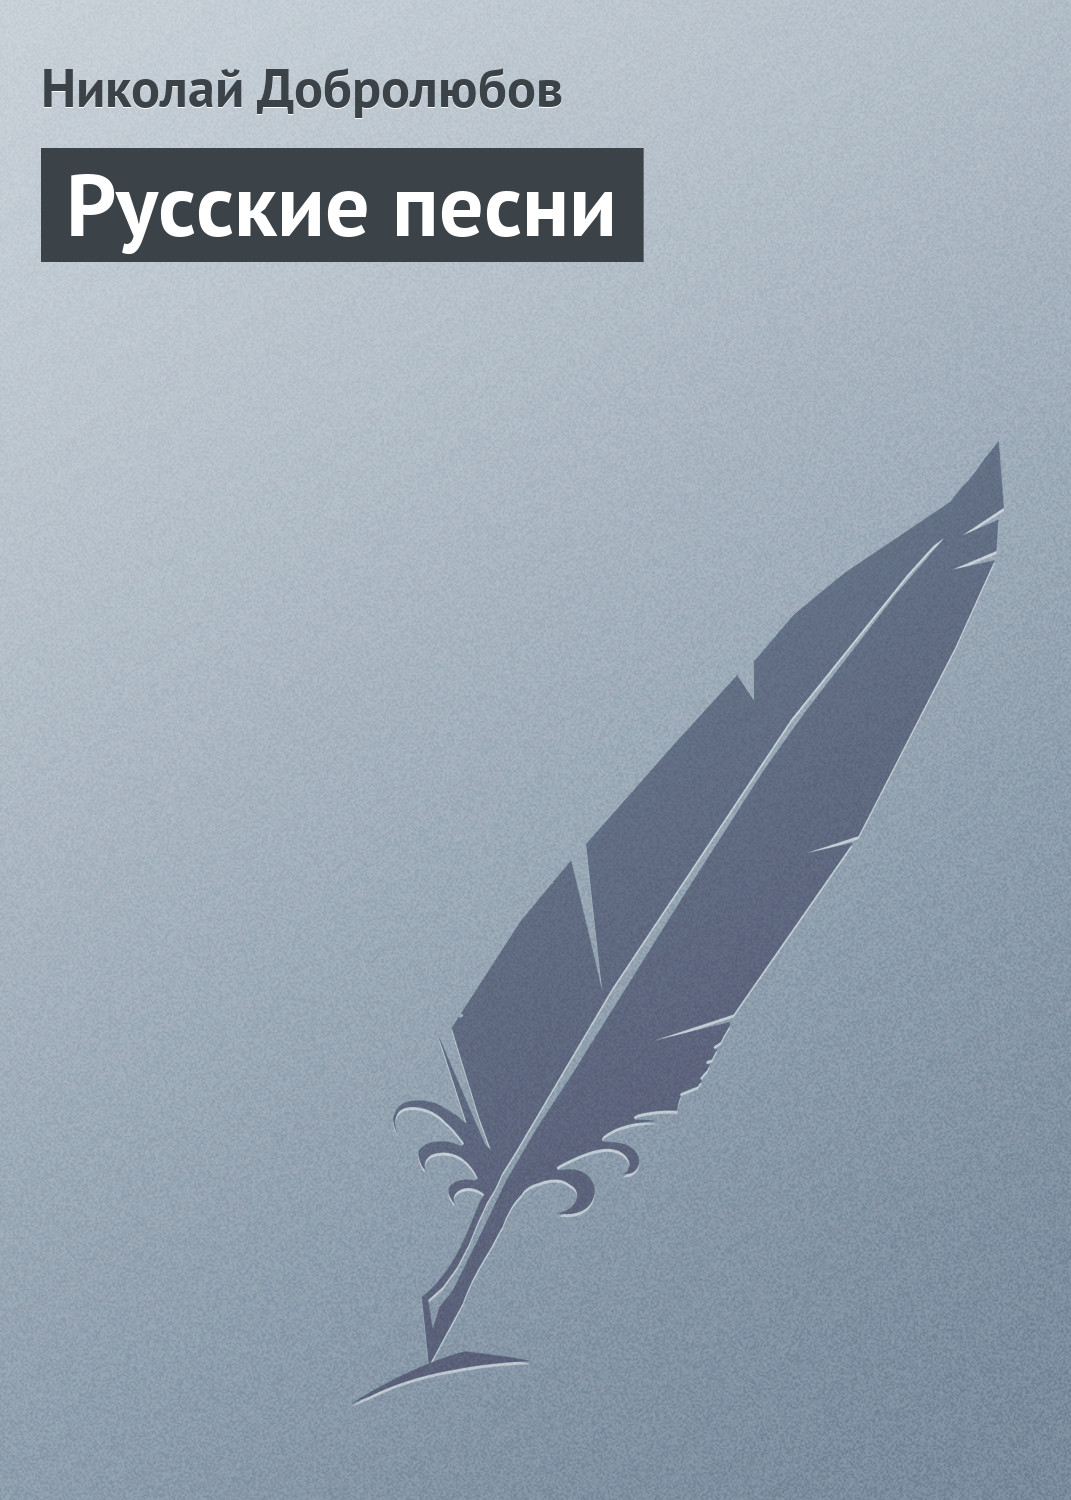 Книга Русские песни из серии , созданная Николай Добролюбов, может относится к жанру Критика. Стоимость книги Русские песни  с идентификатором 3120205 составляет 5.99 руб.